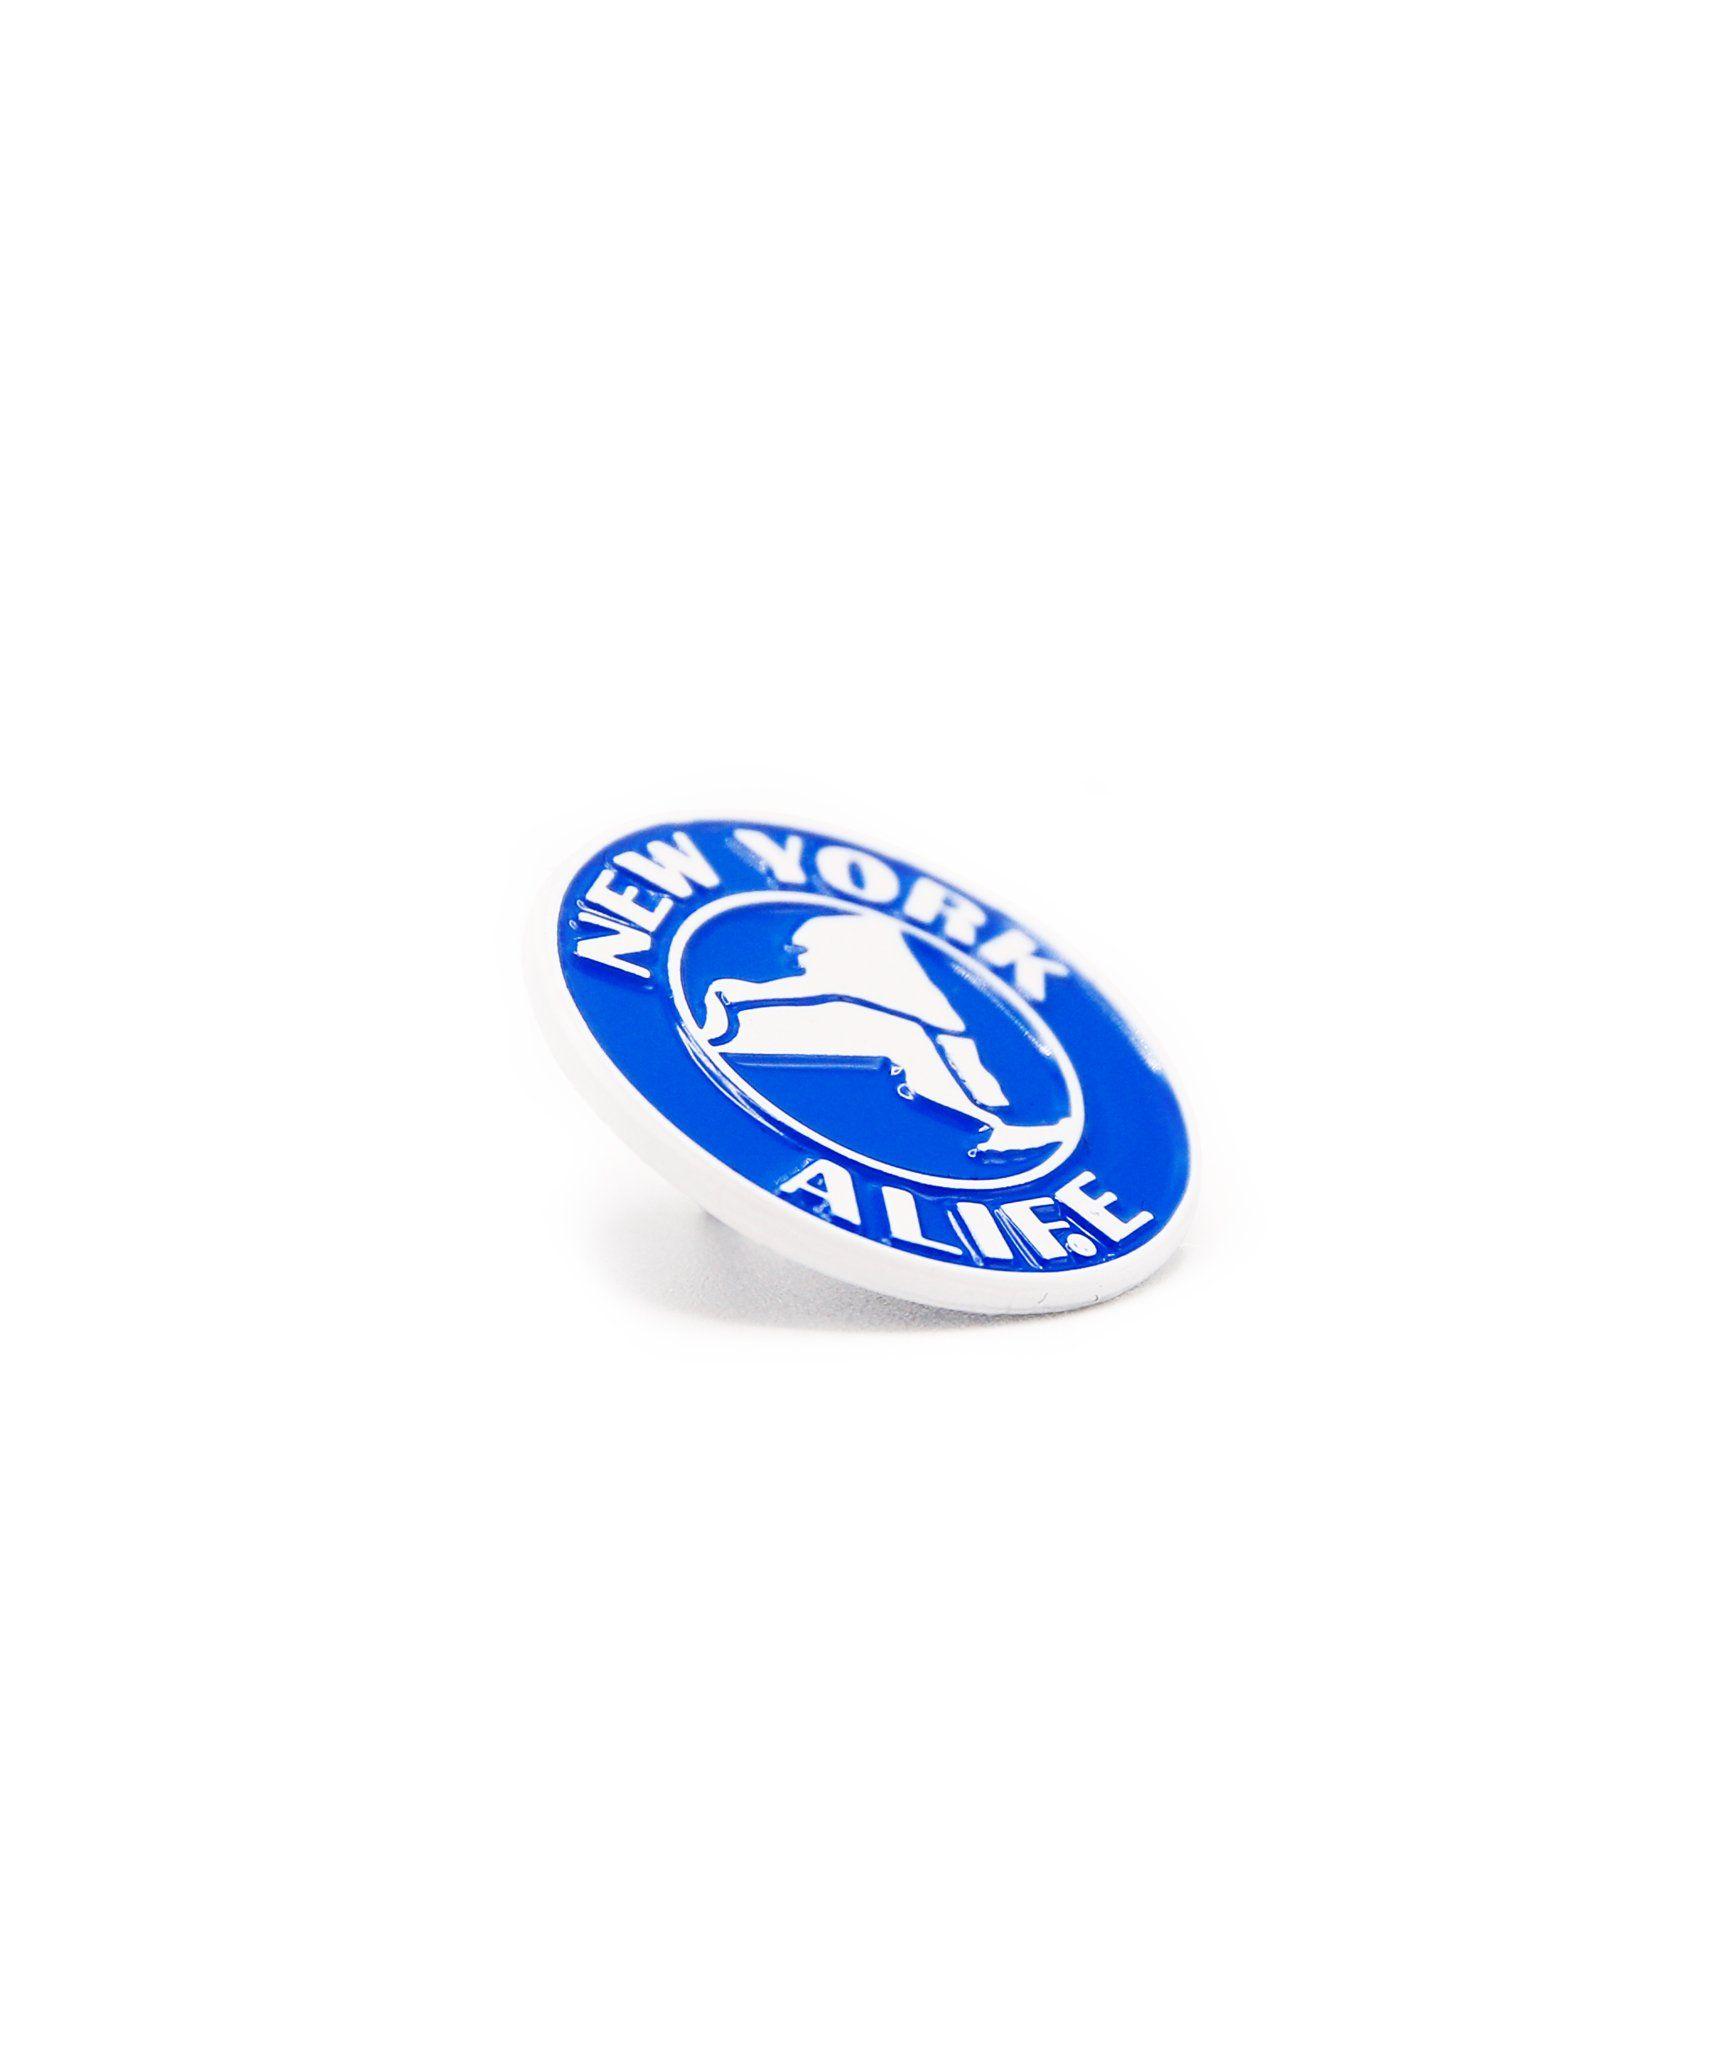 Alife NY Logo - Alife NY Thruway Pin – Alife®